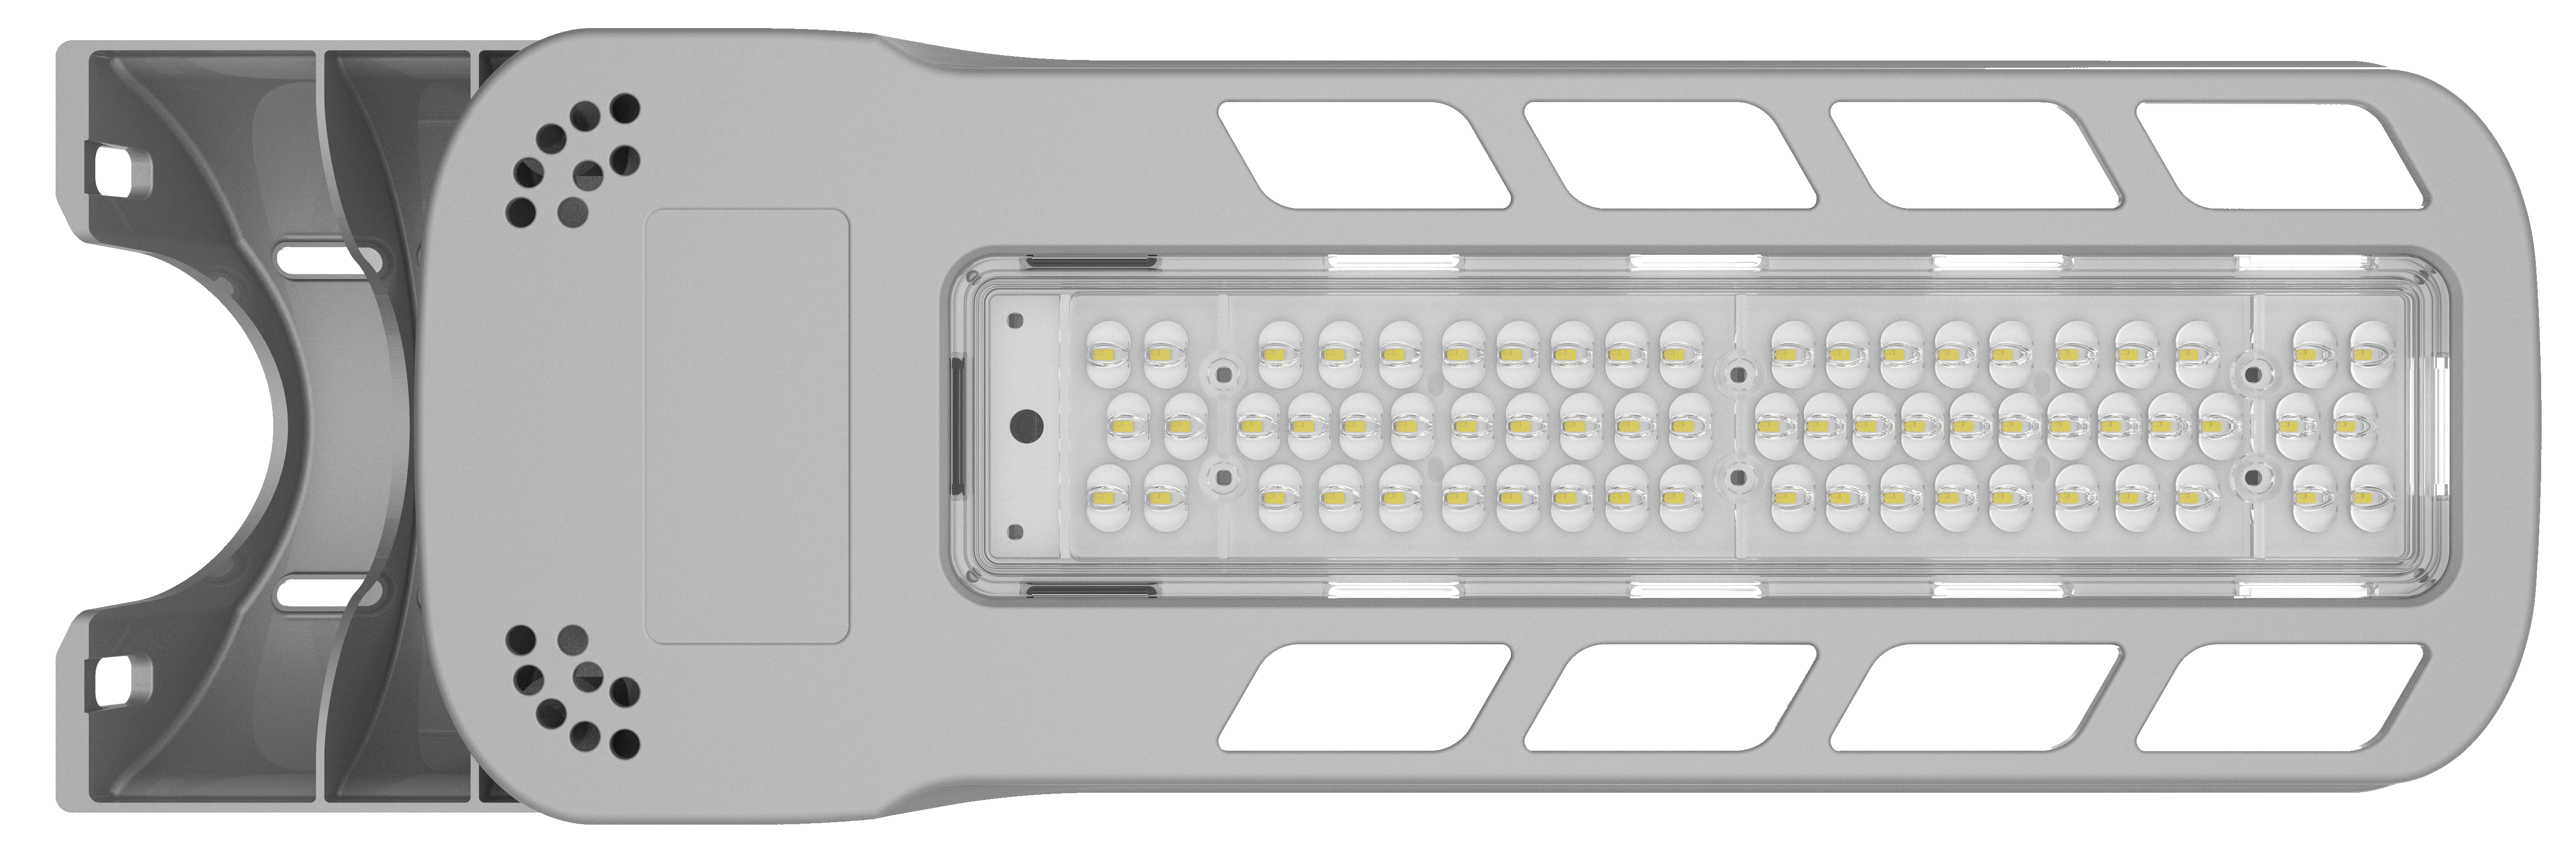 Réverbère à LED de type simple série RK 